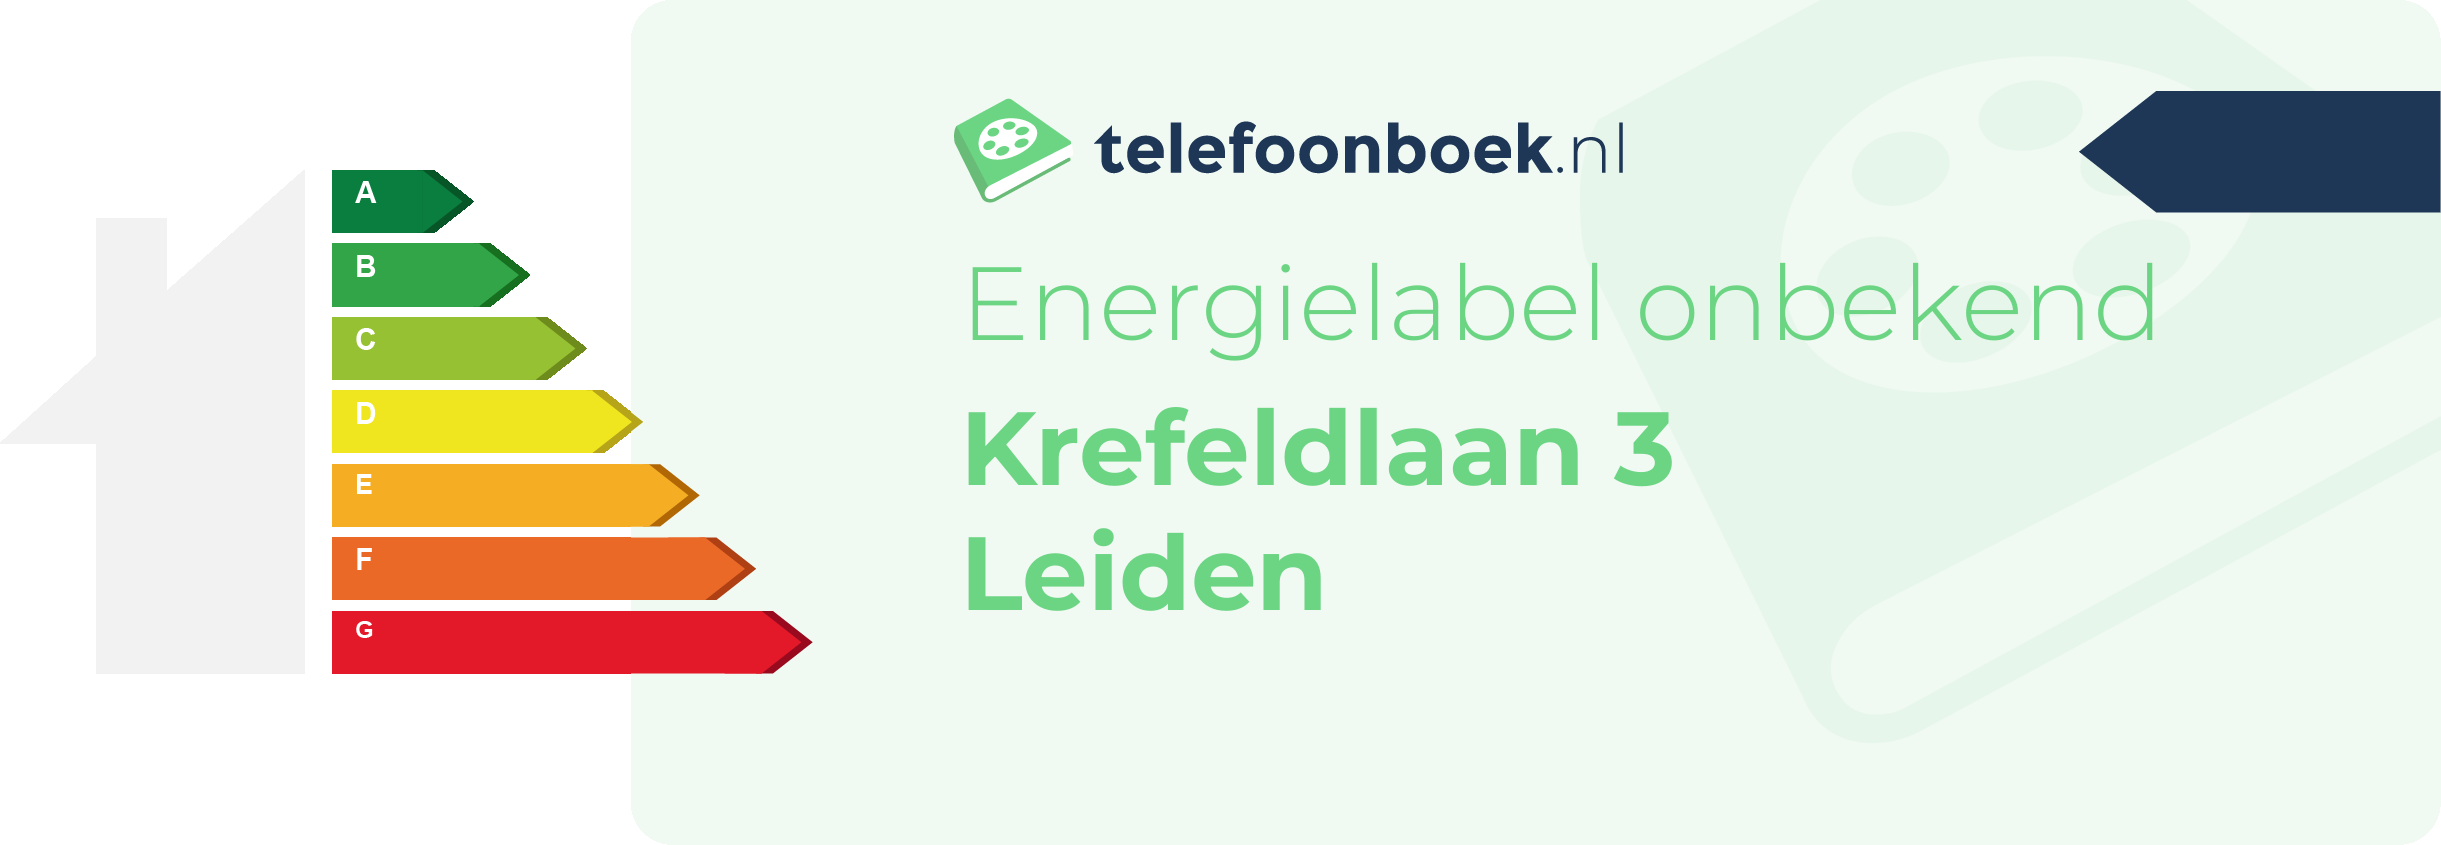 Energielabel Krefeldlaan 3 Leiden